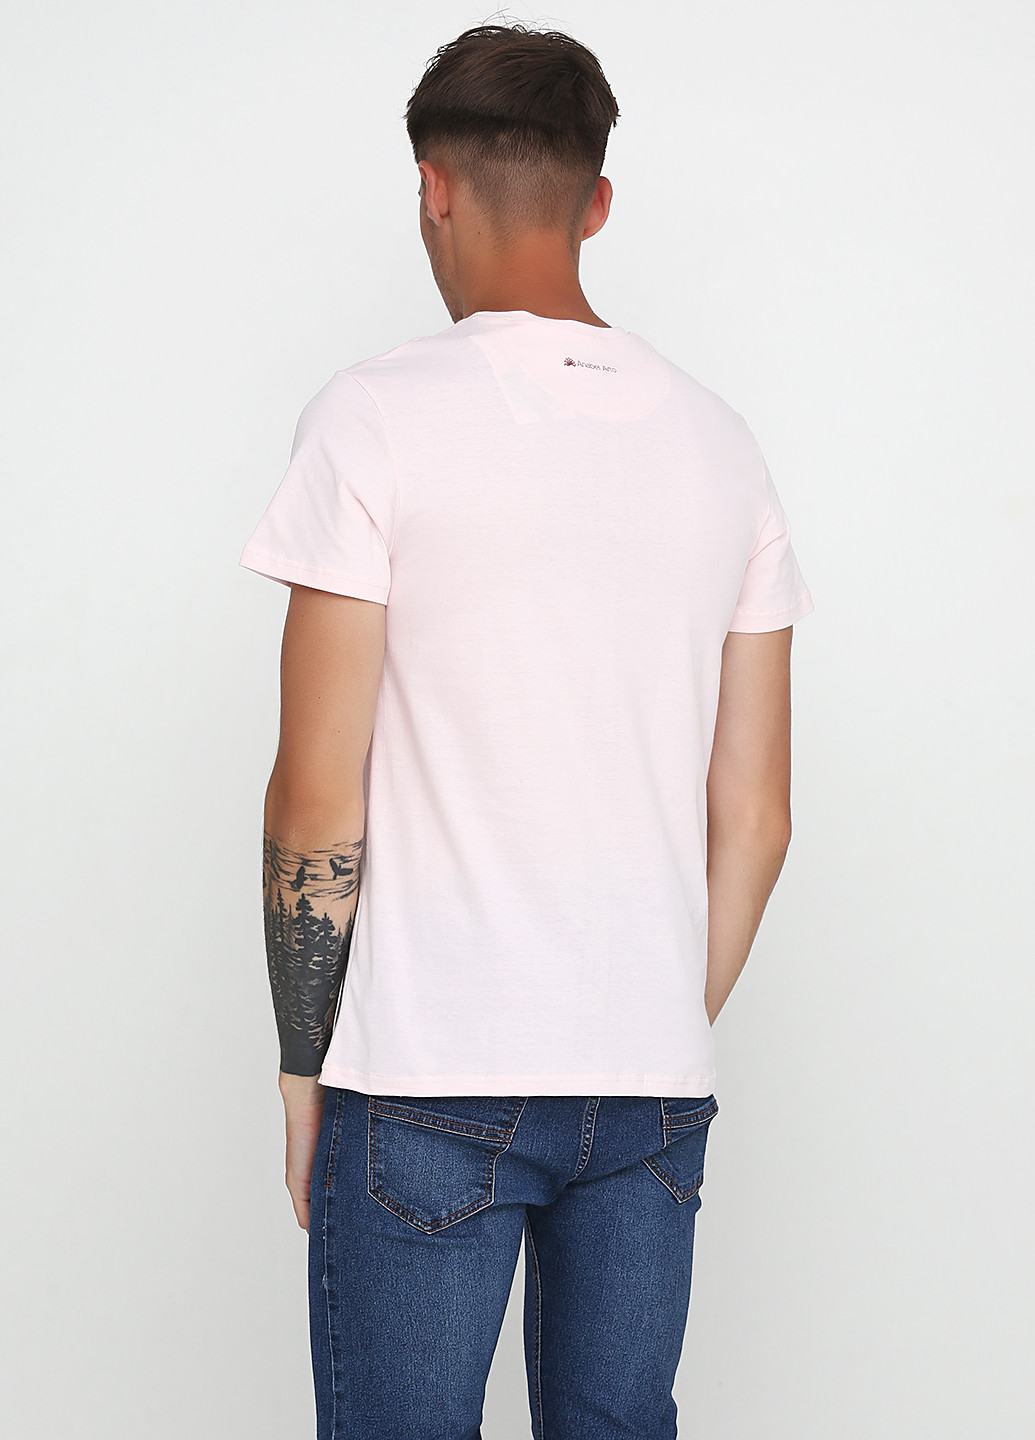 Светло-розовая футболка Anabel Arto